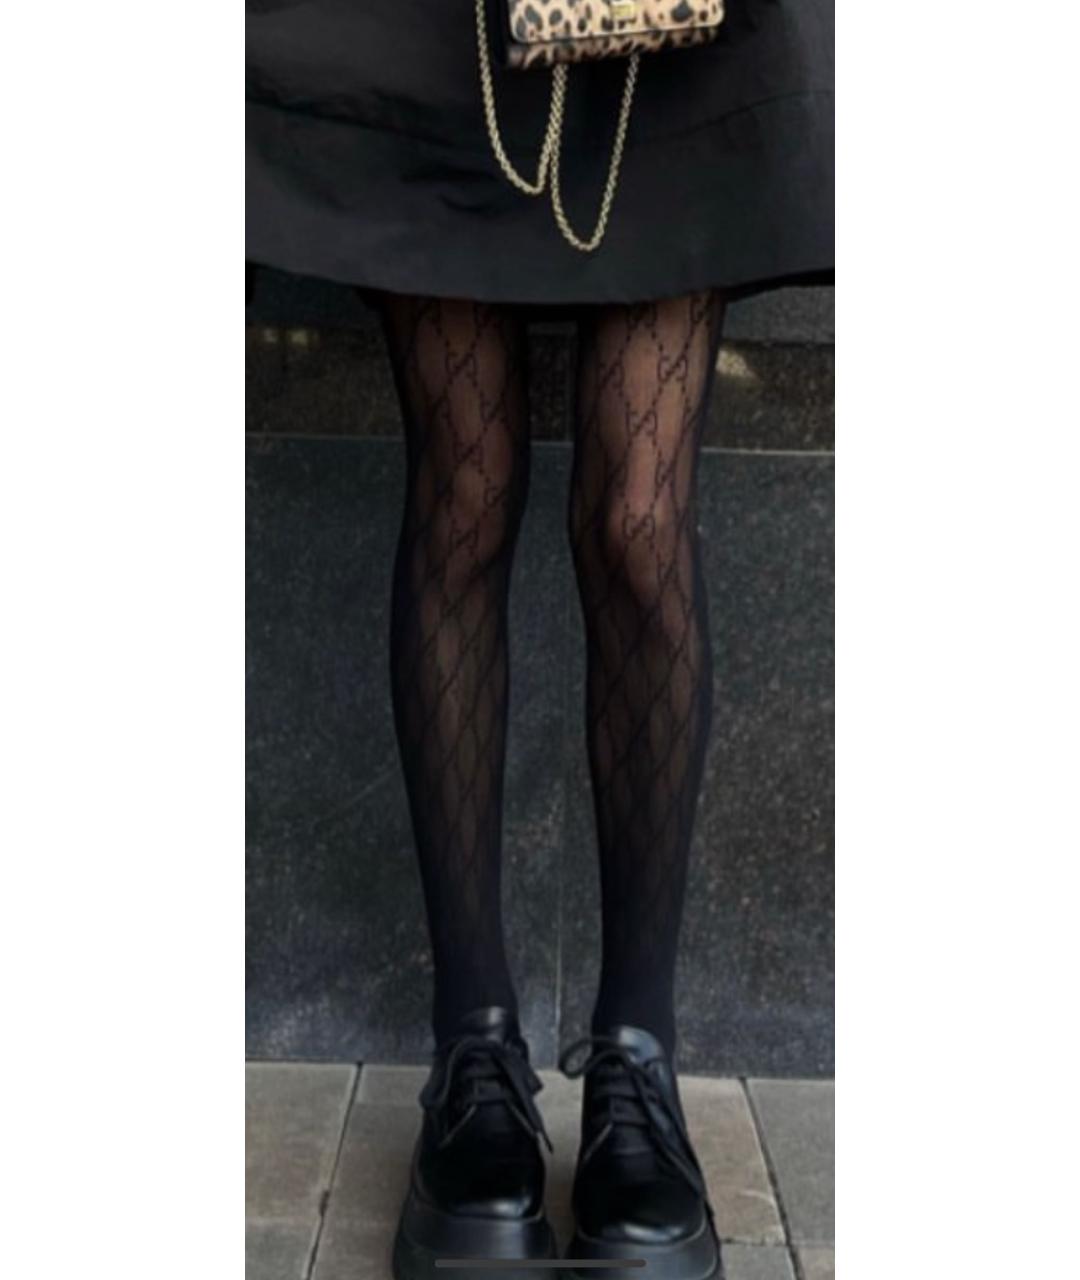 Носки, чулки и колготы GUCCI для женщин купить за 19000 руб, арт. 1502917 –  Интернет-магазин Oskelly